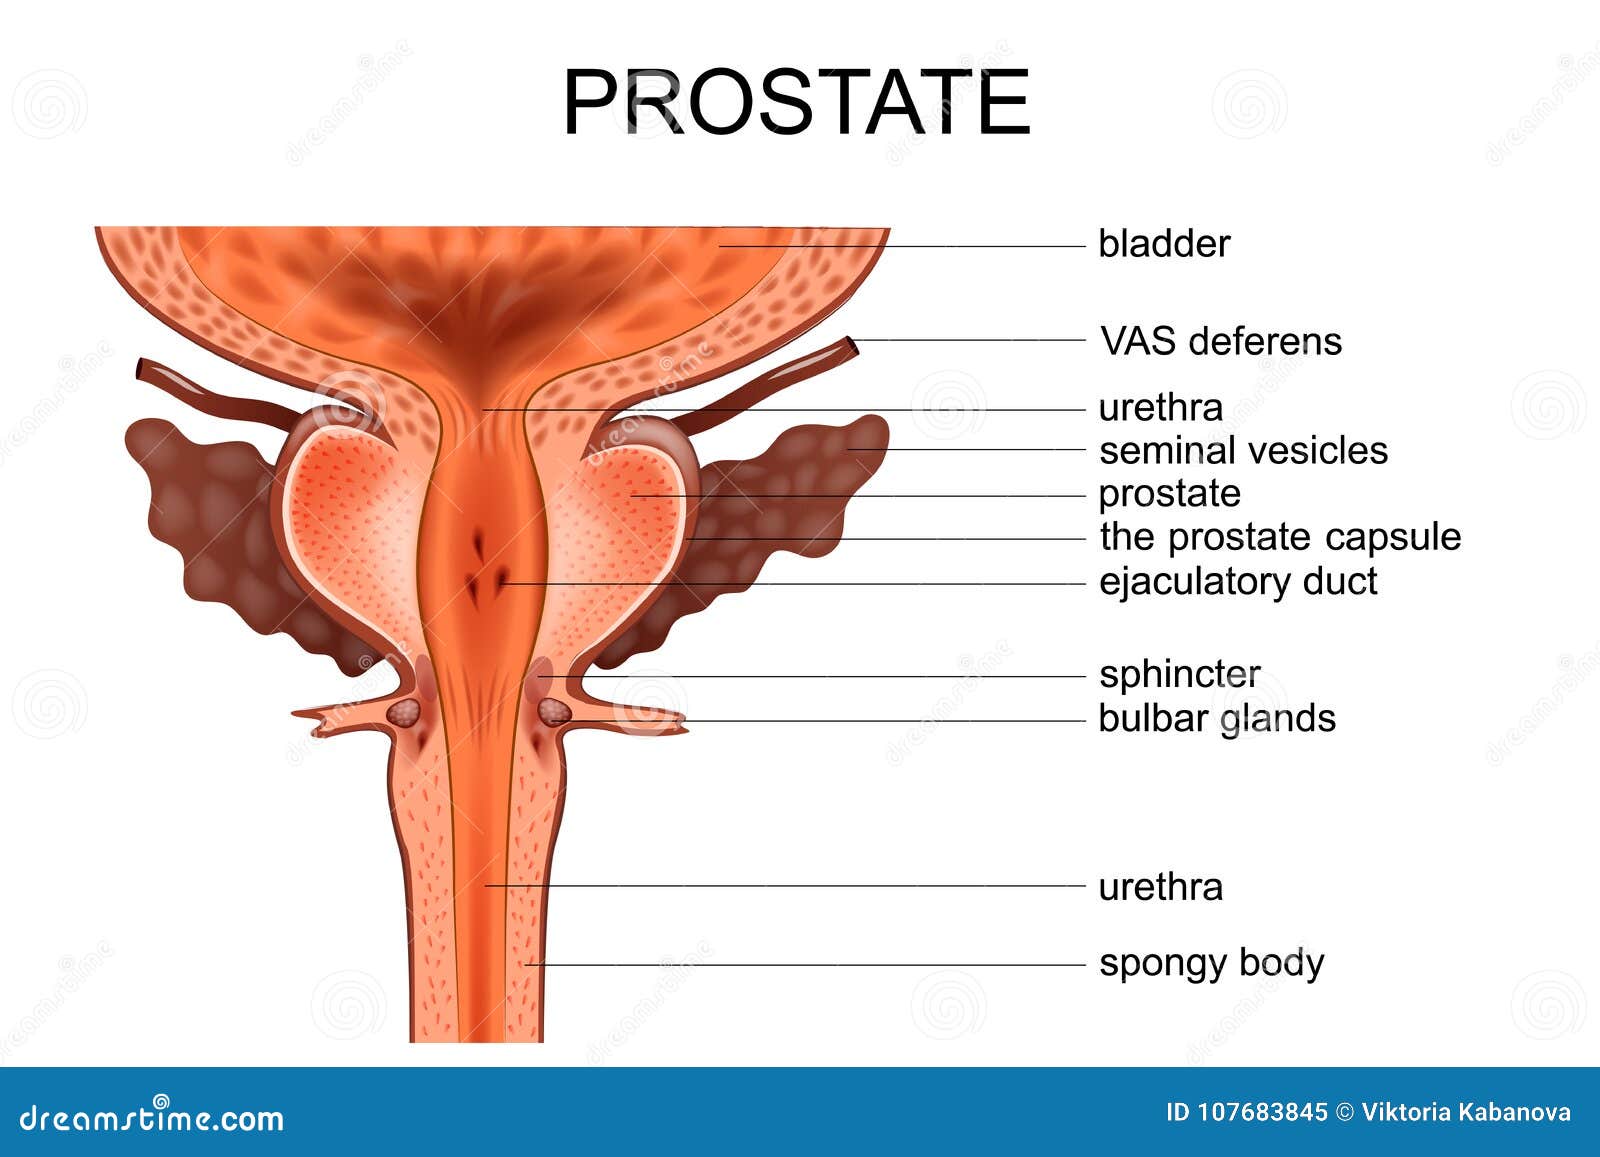 durere ascuțită în abdomenul inferior cu prostatita definiți prostatita